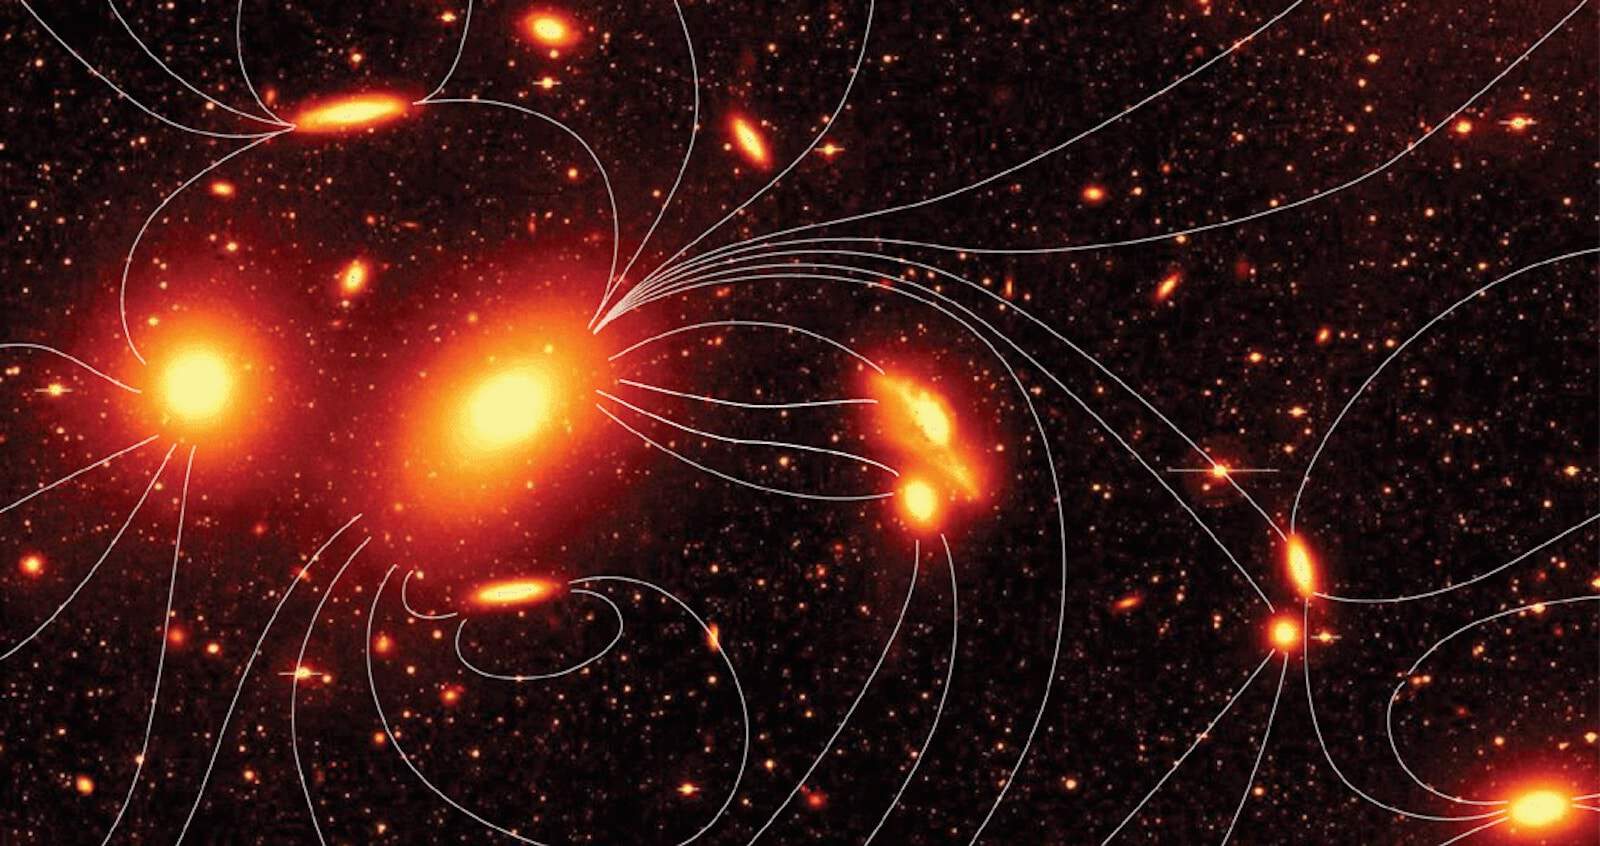 ダークマターが宇宙初期の磁場をマッピングしてくれるかも知れない